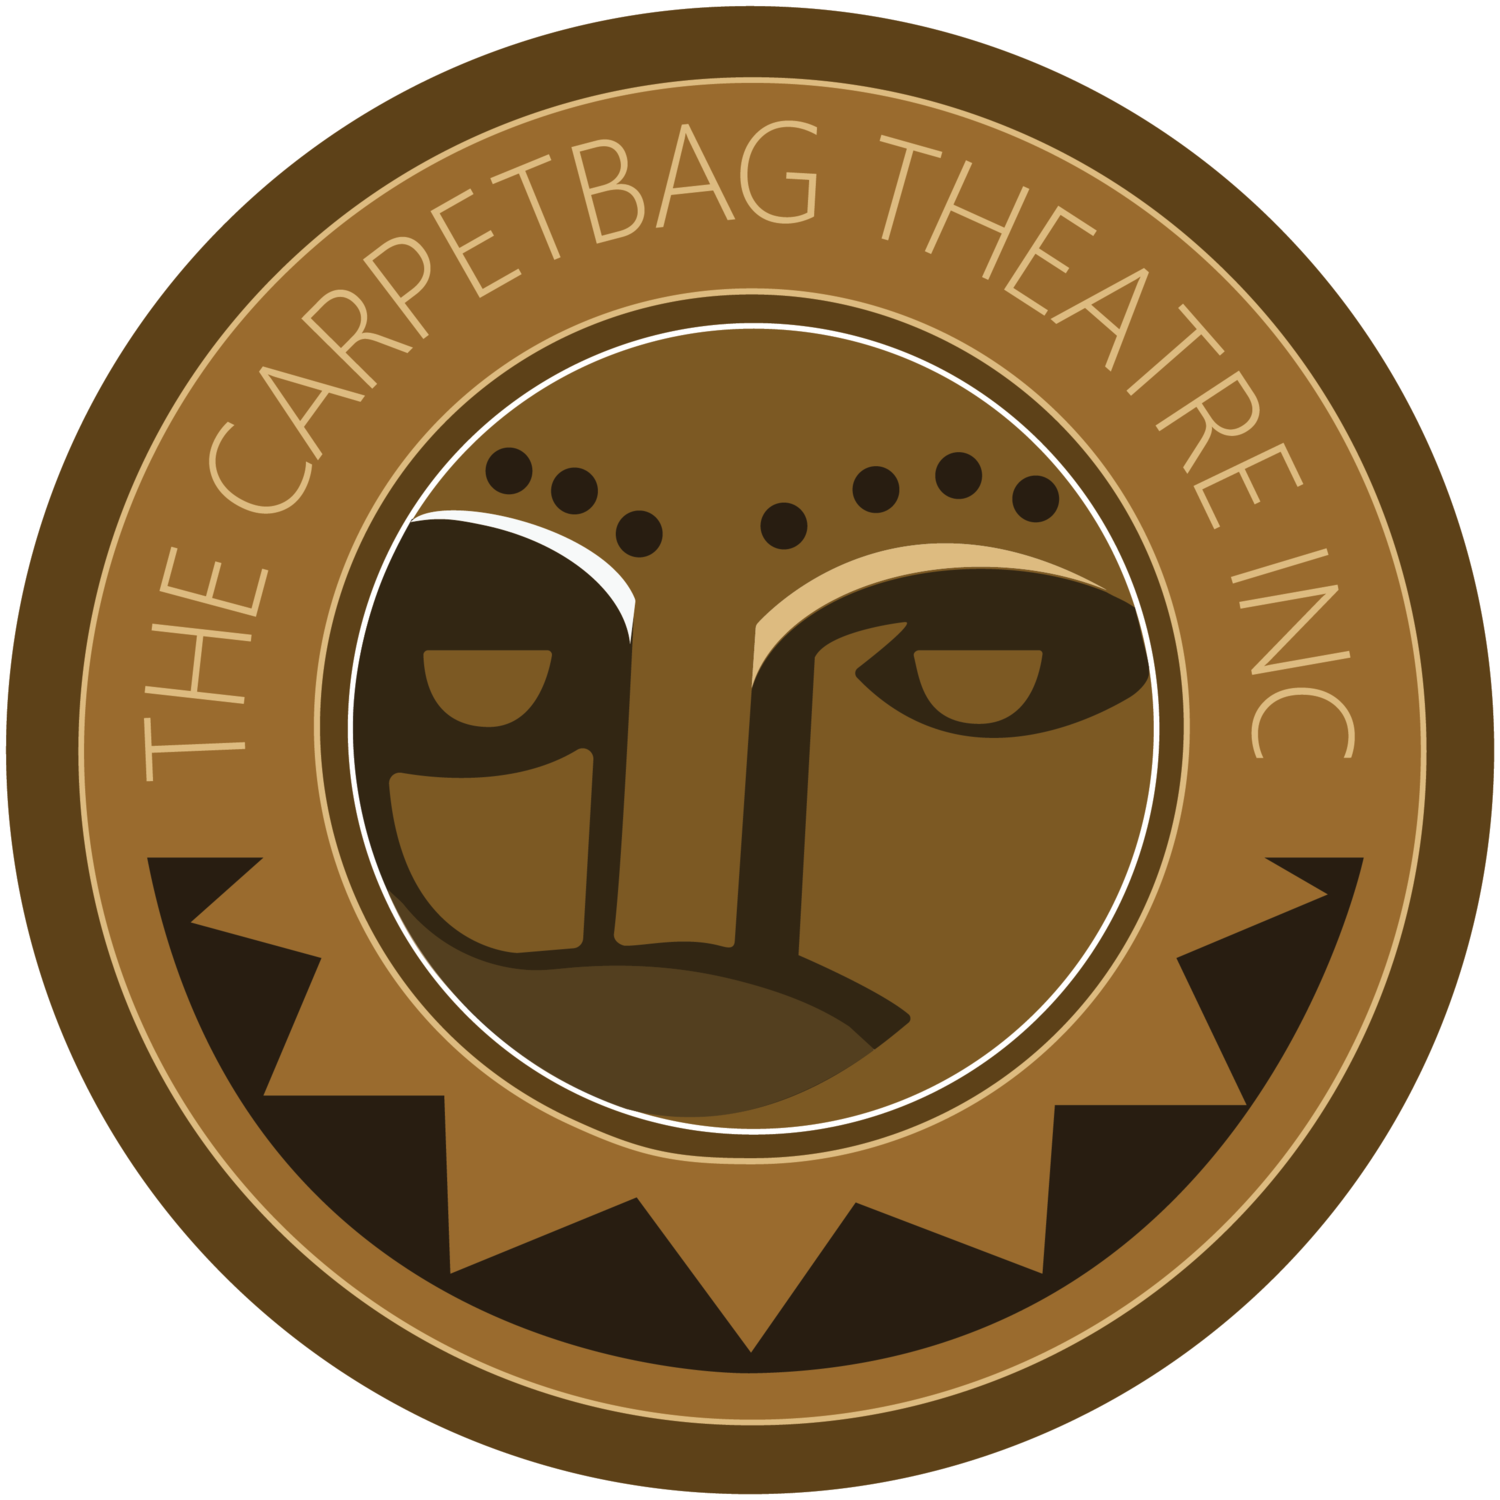 Carpetbag Theatre